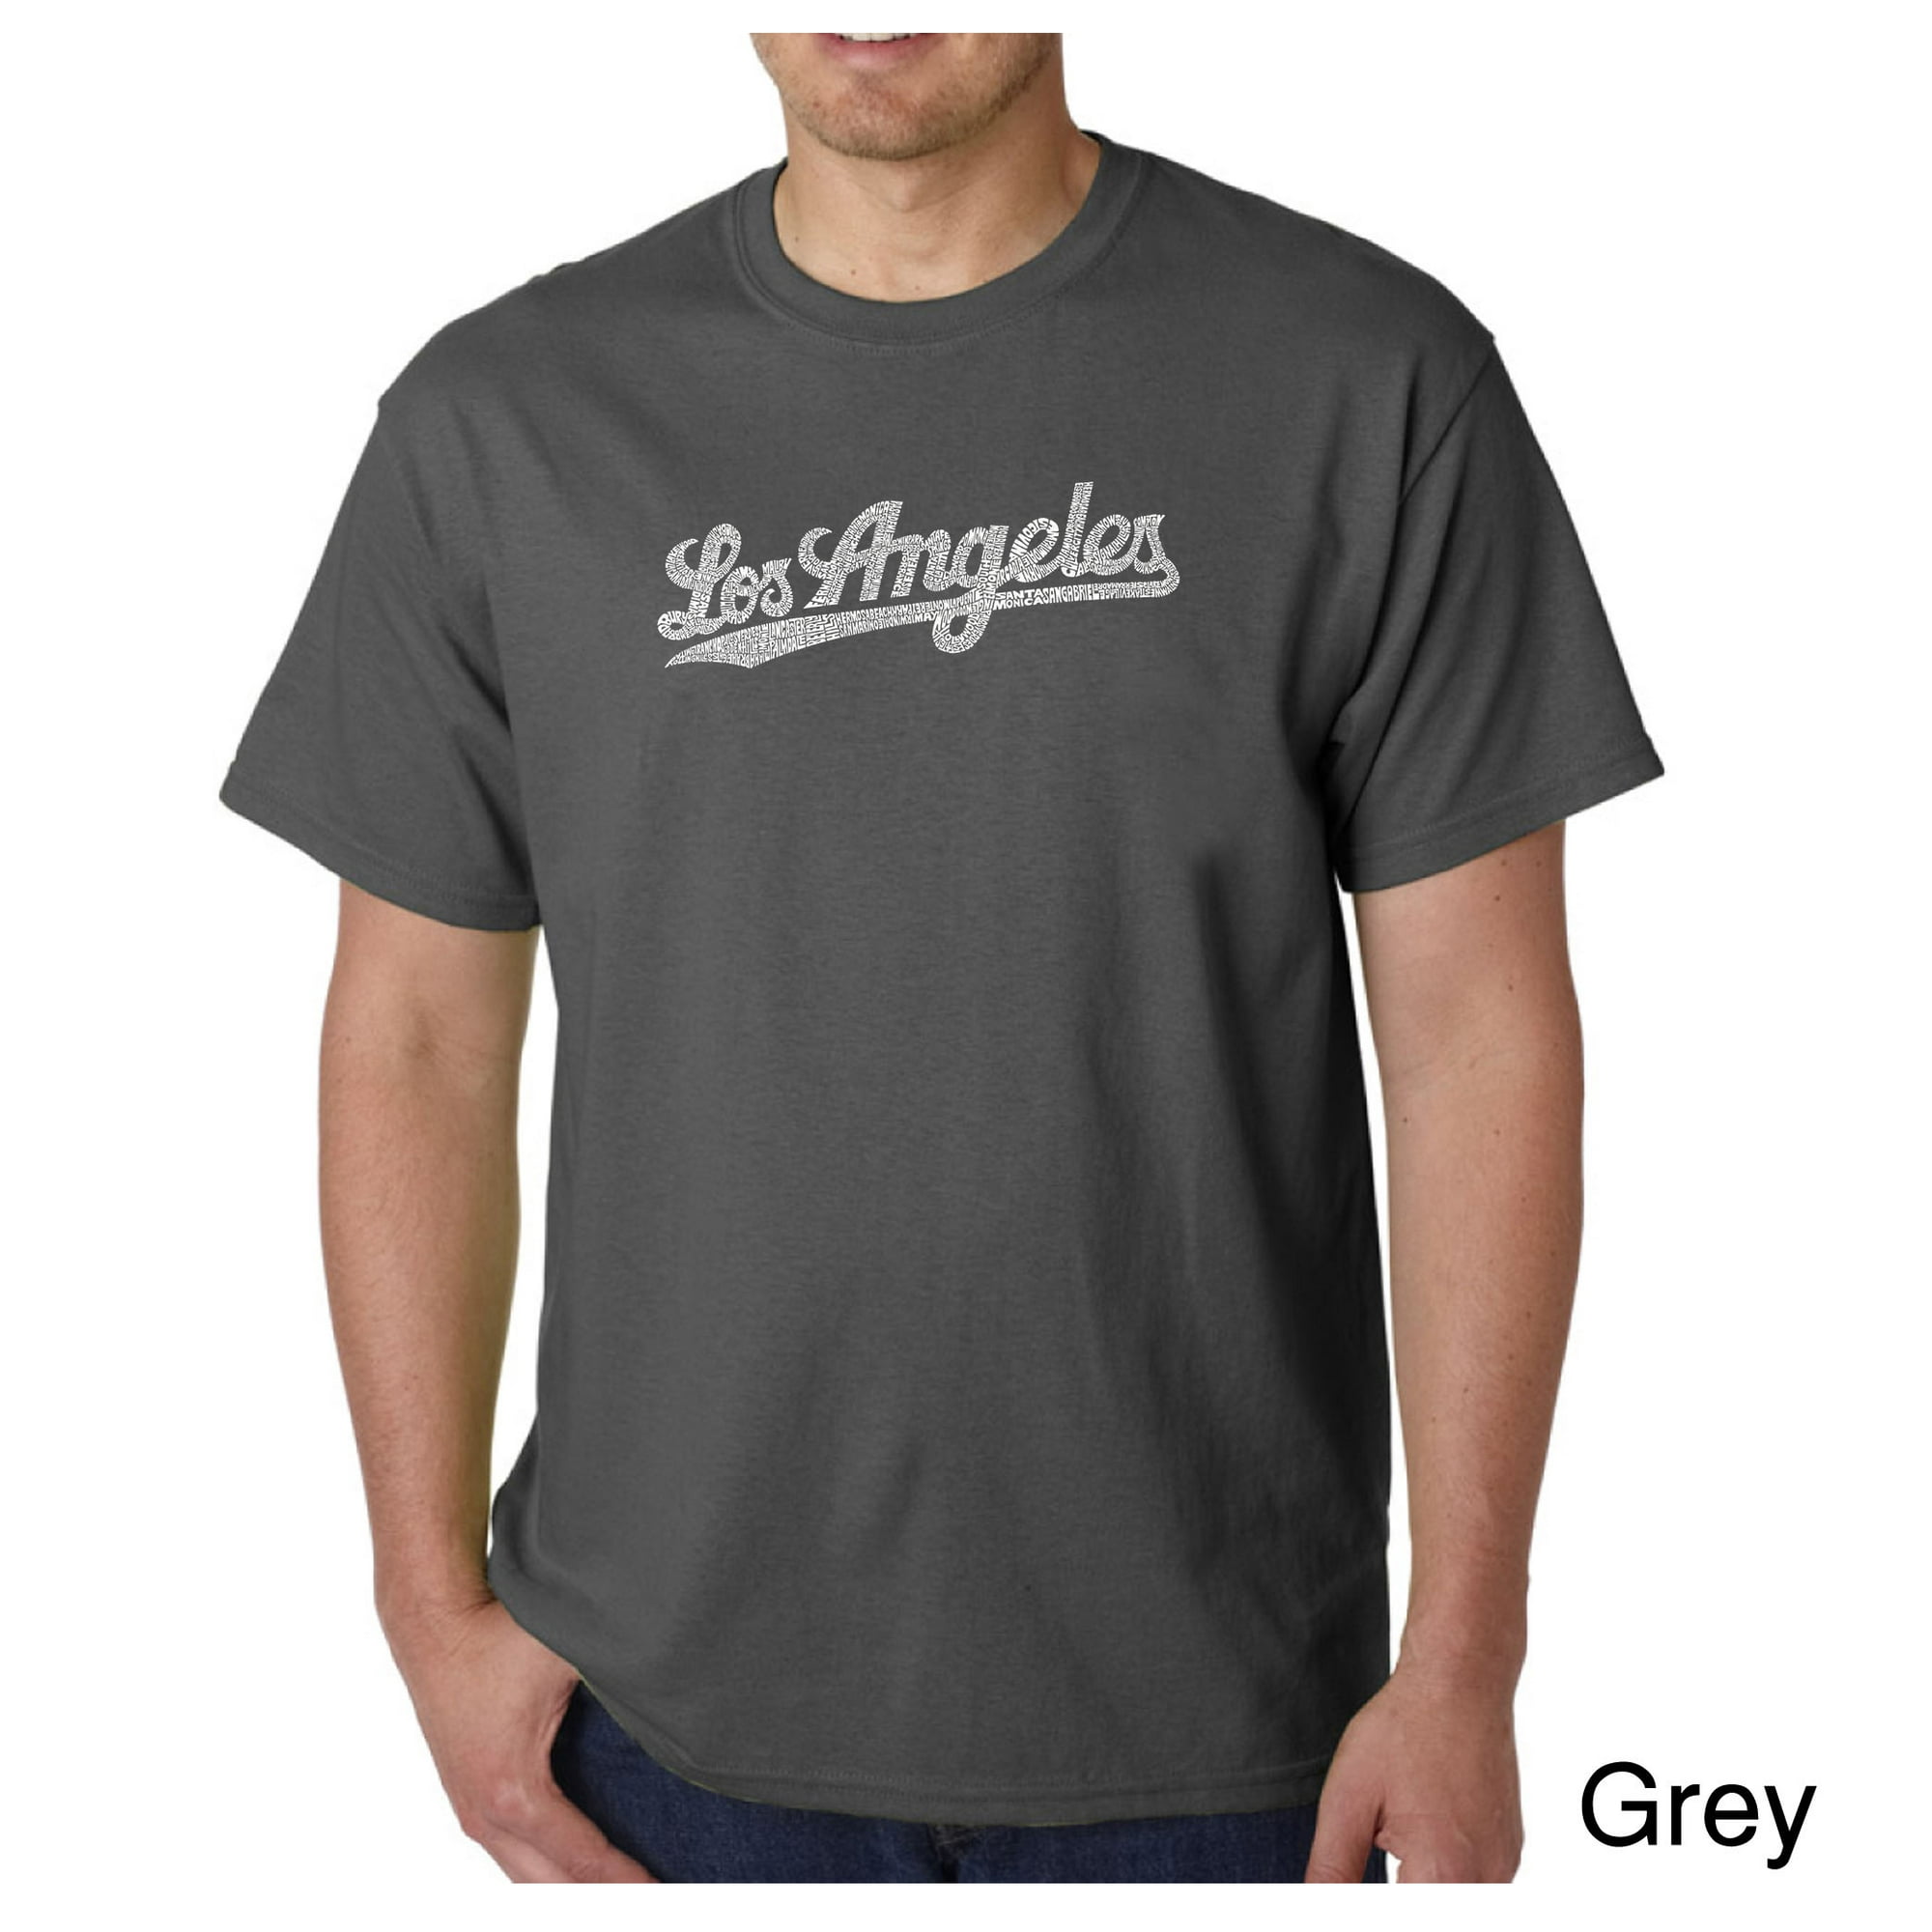 LA Pop Art Men's Word Art T-Shirt - LOS ANGELES NEIGHBORHOODS